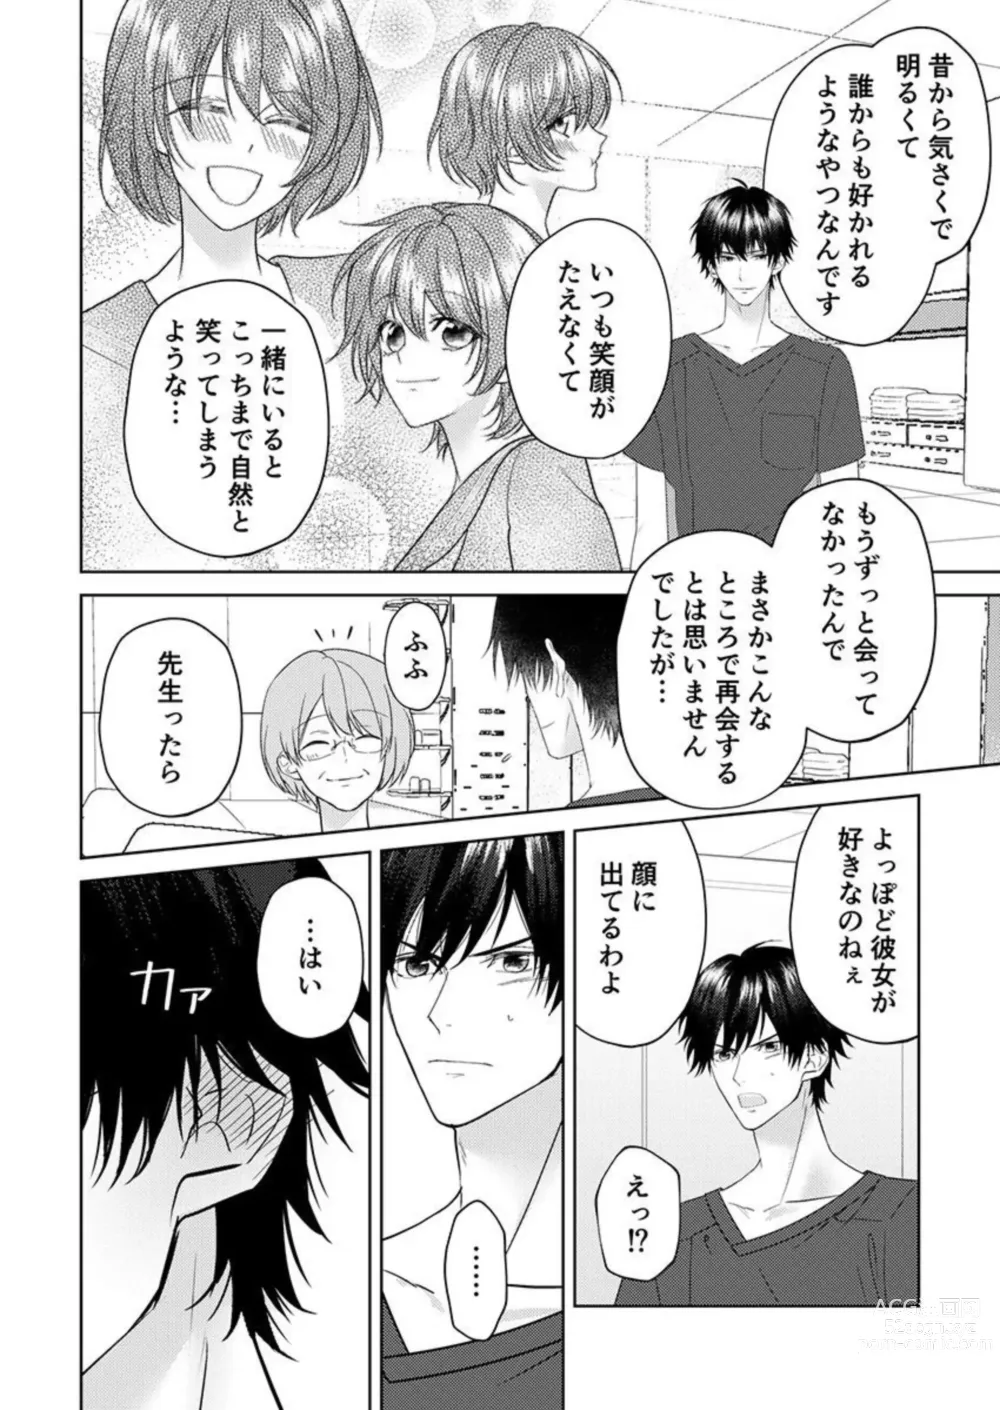 Page 48 of manga Osananajimi wa Mou Yameta.